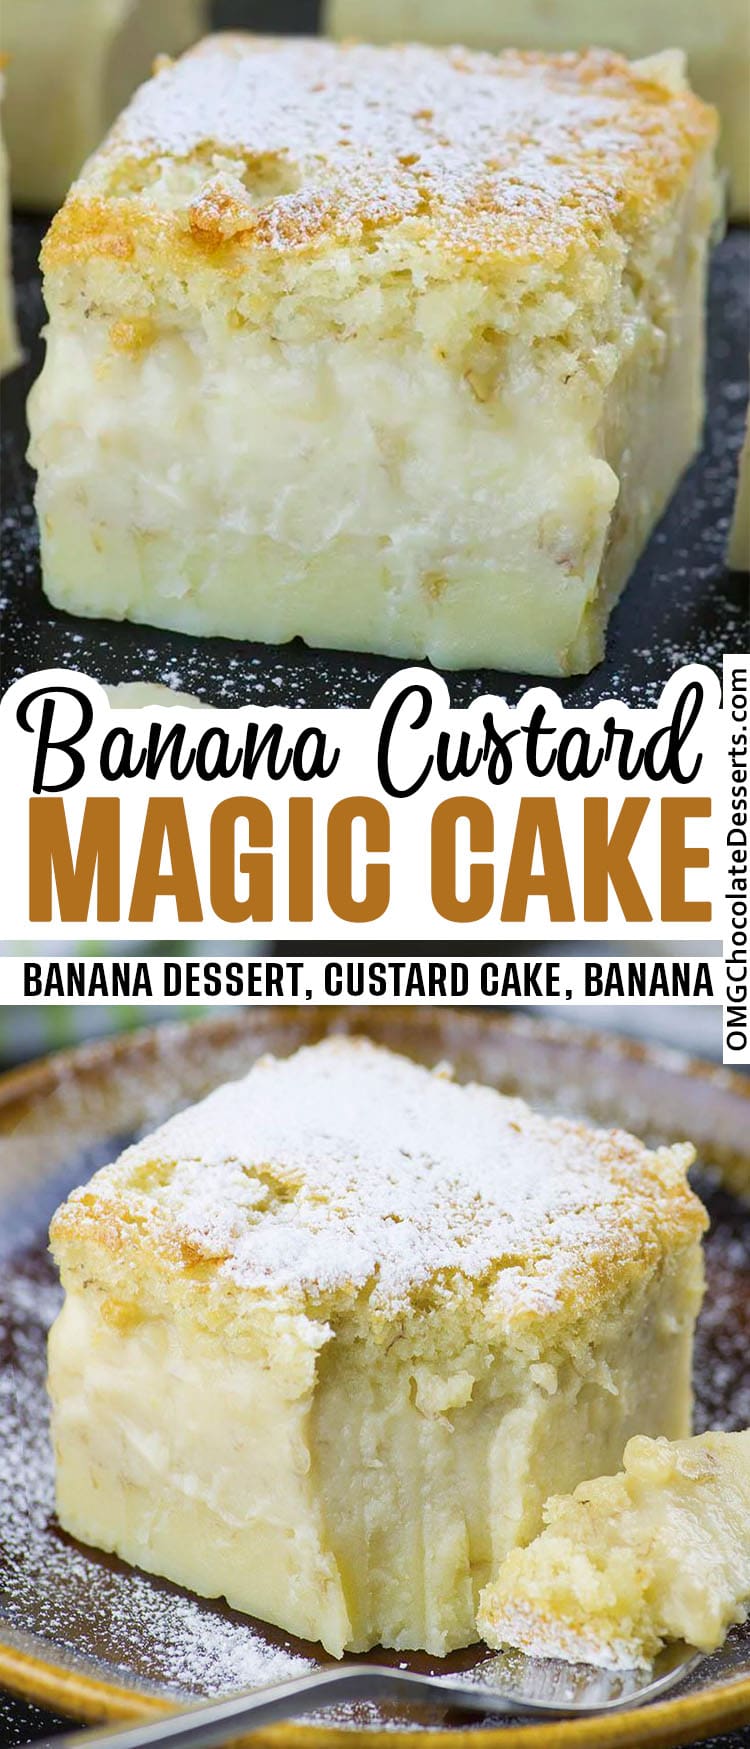 Banana Custard Cake 